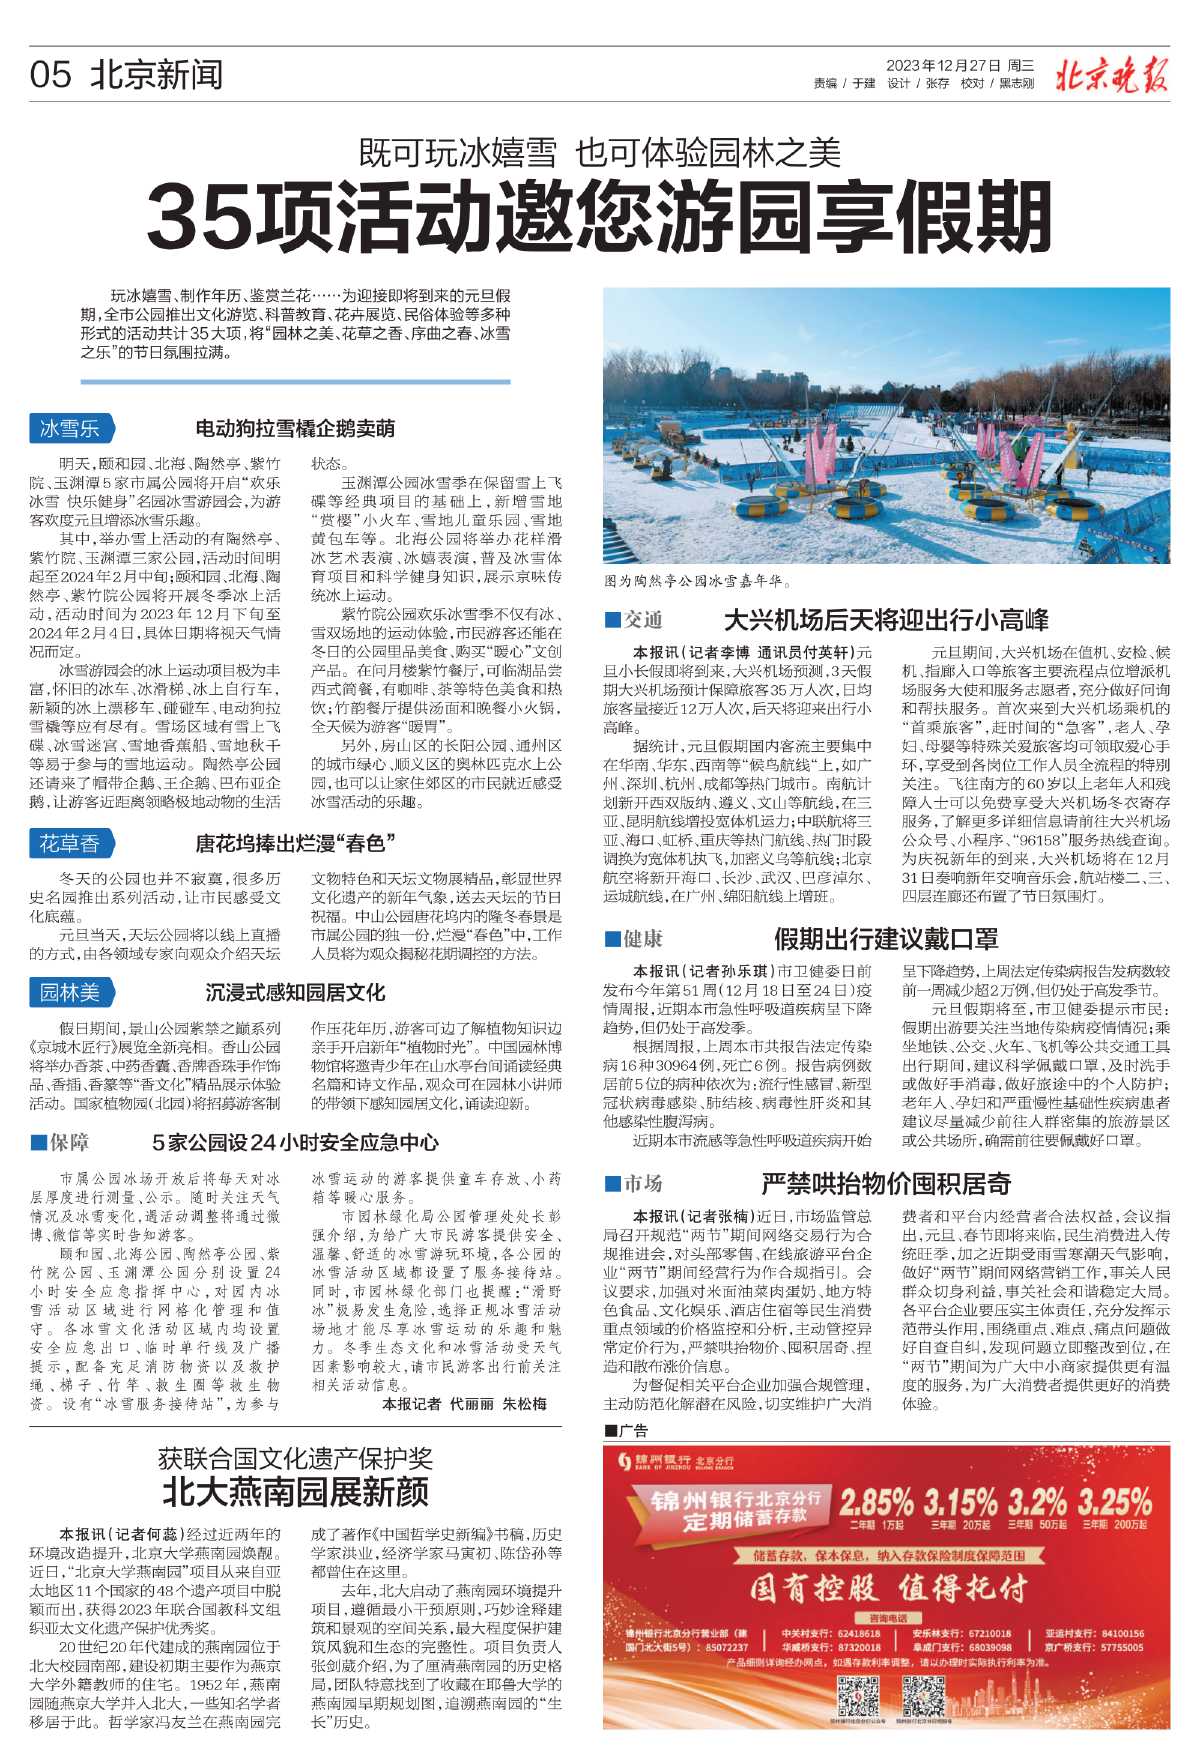 1227北京日报-35项活动邀您游园享假期.jpg